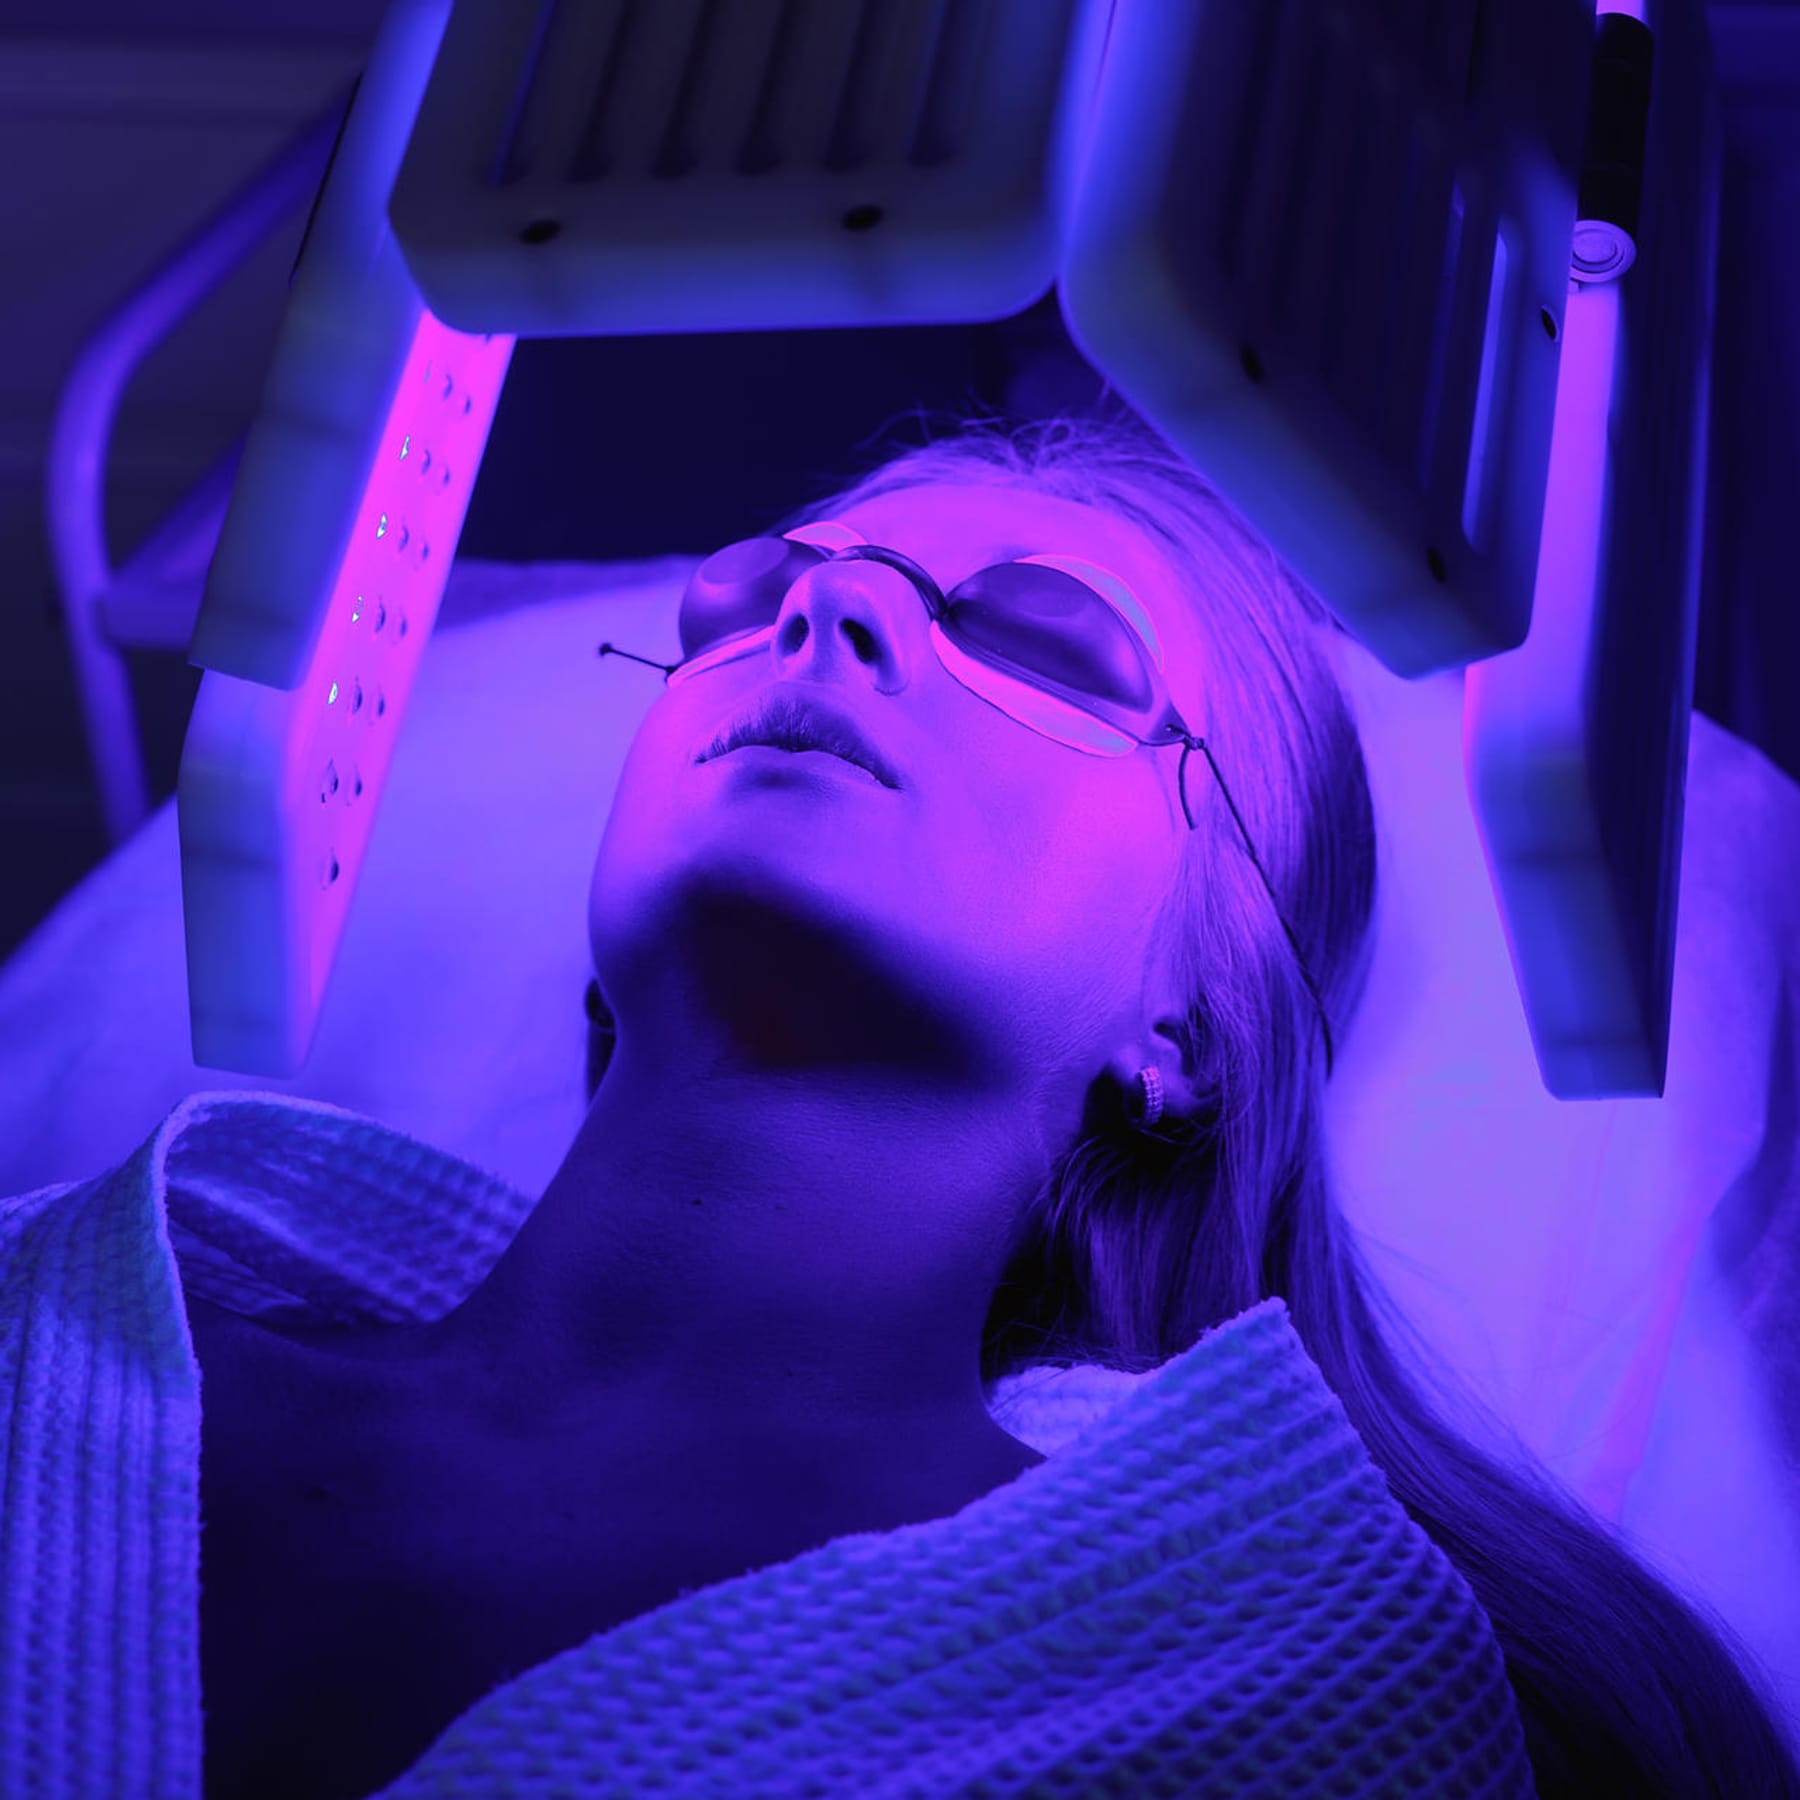 Lichttherapie: Lässt blaues Licht Pickel und Falten verschwinden?